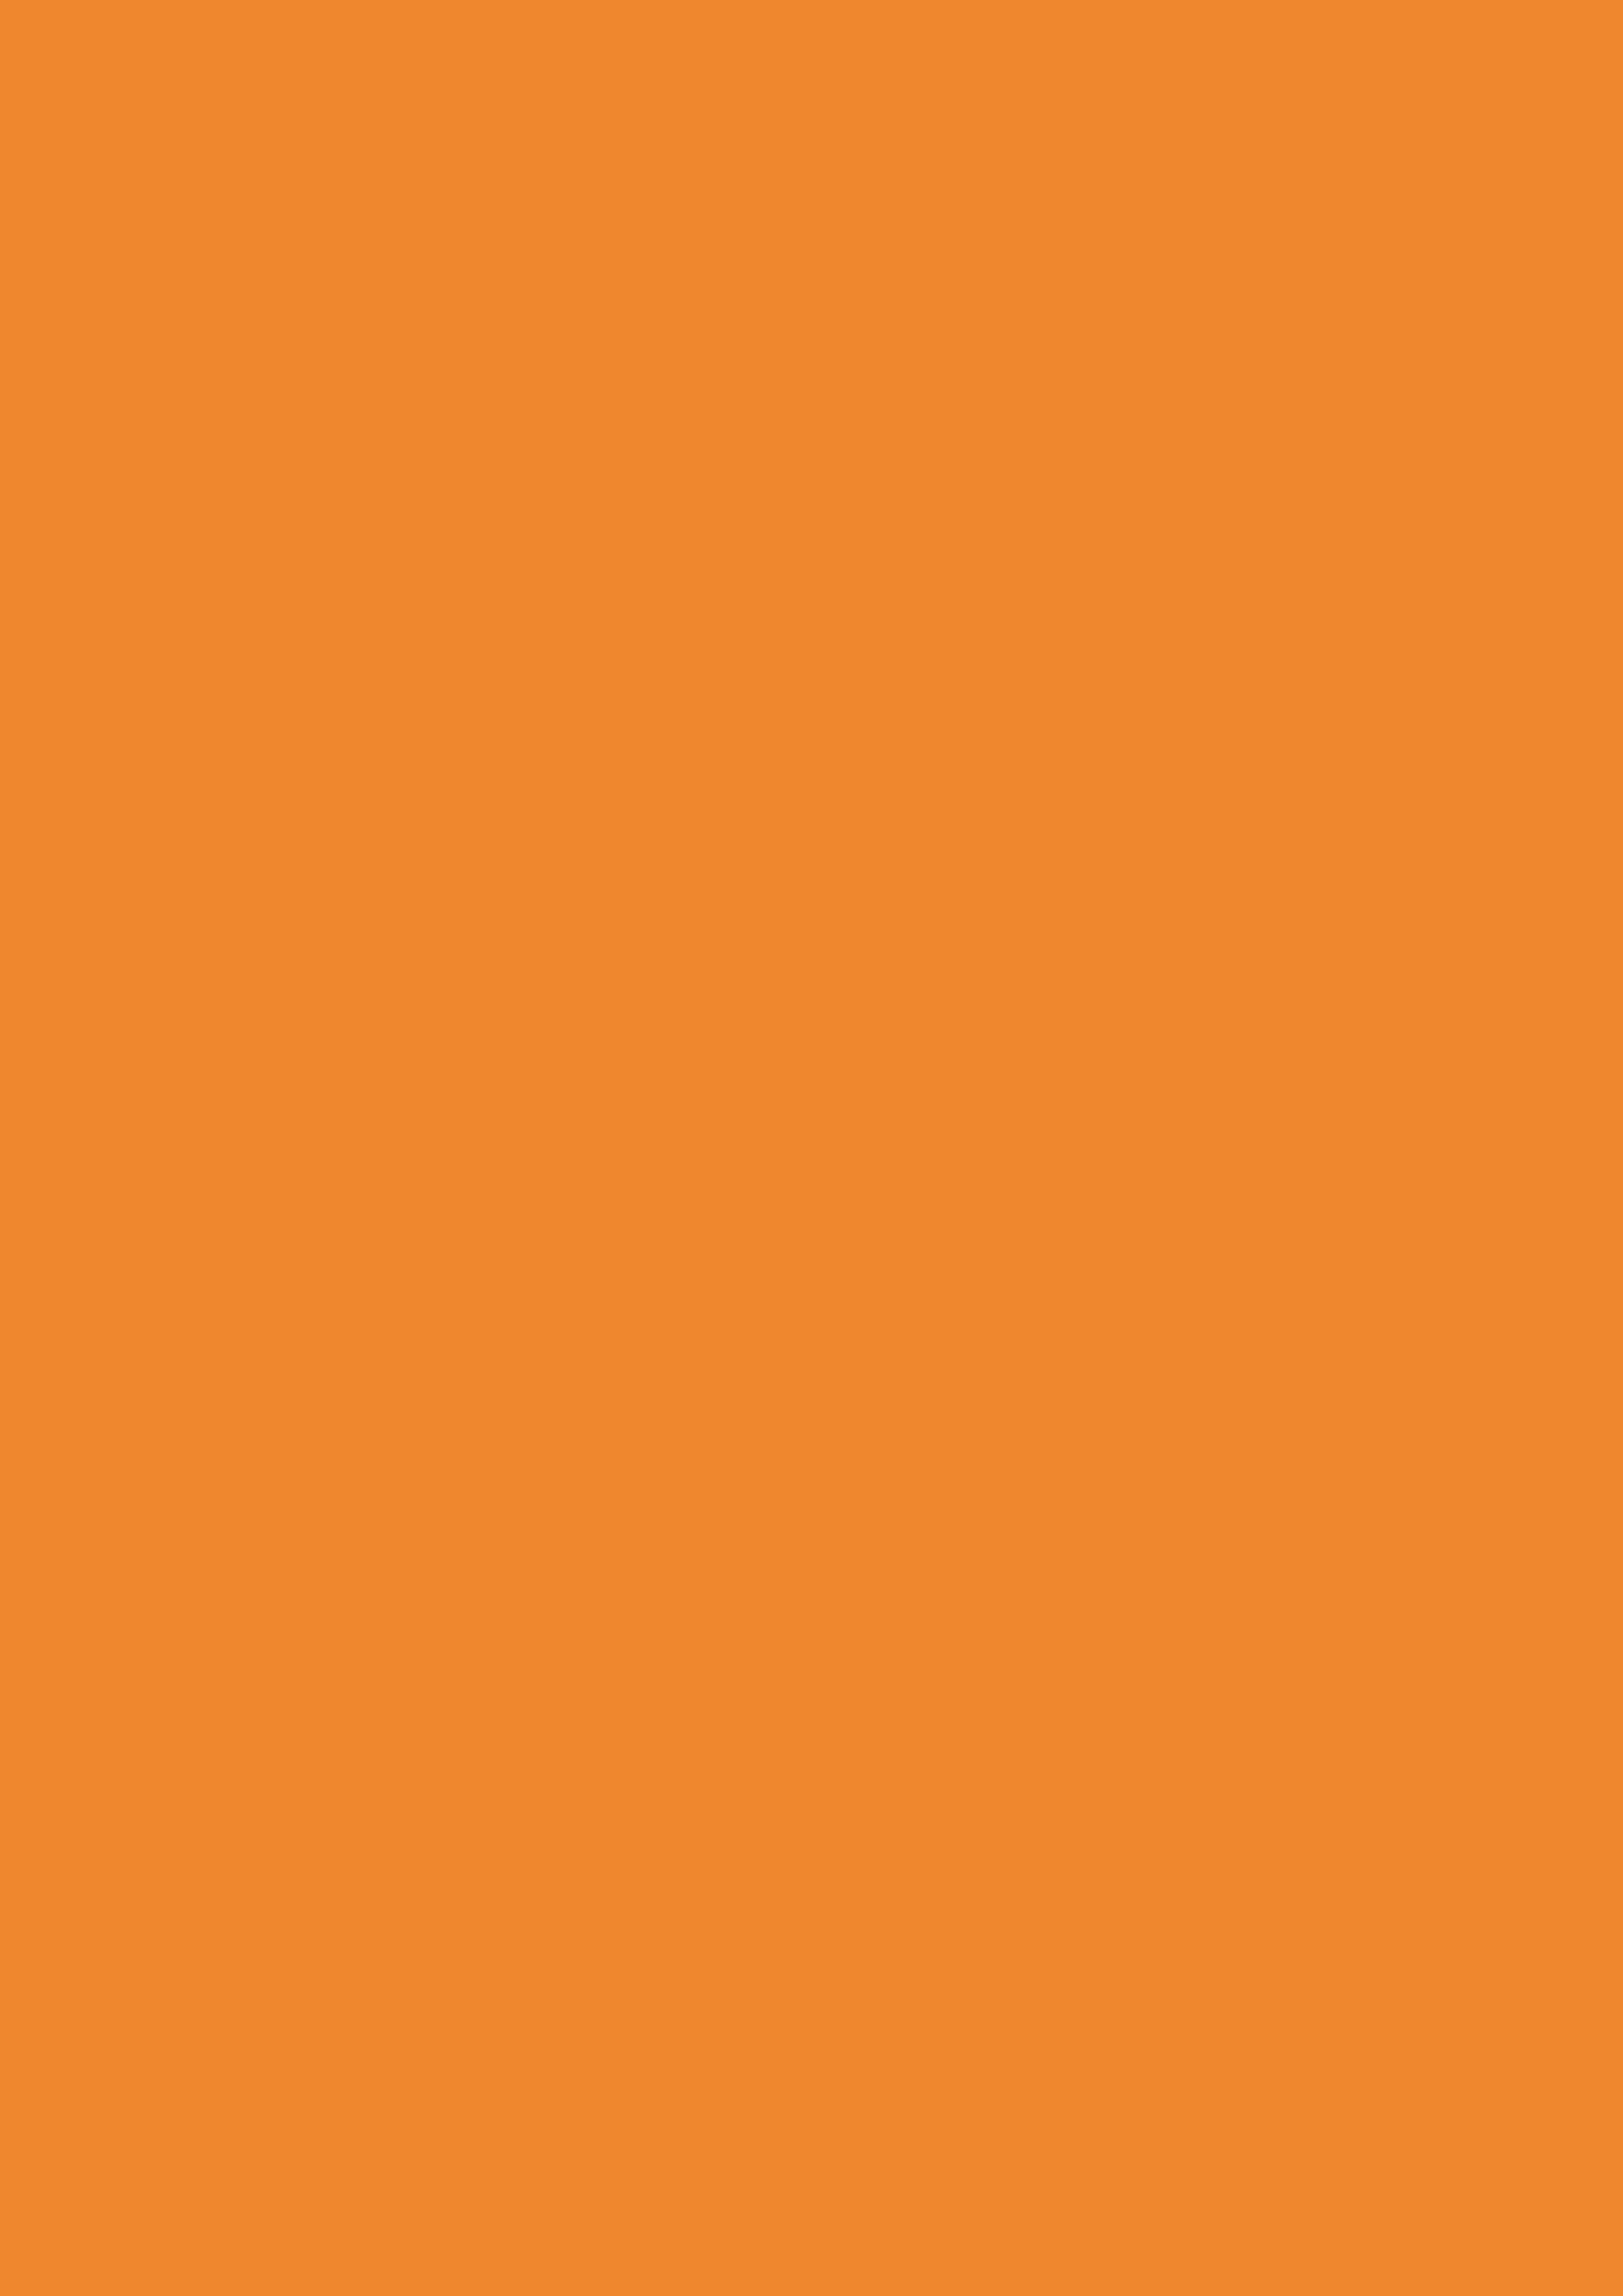 2480x3508 Cadmium Orange Solid Color Background